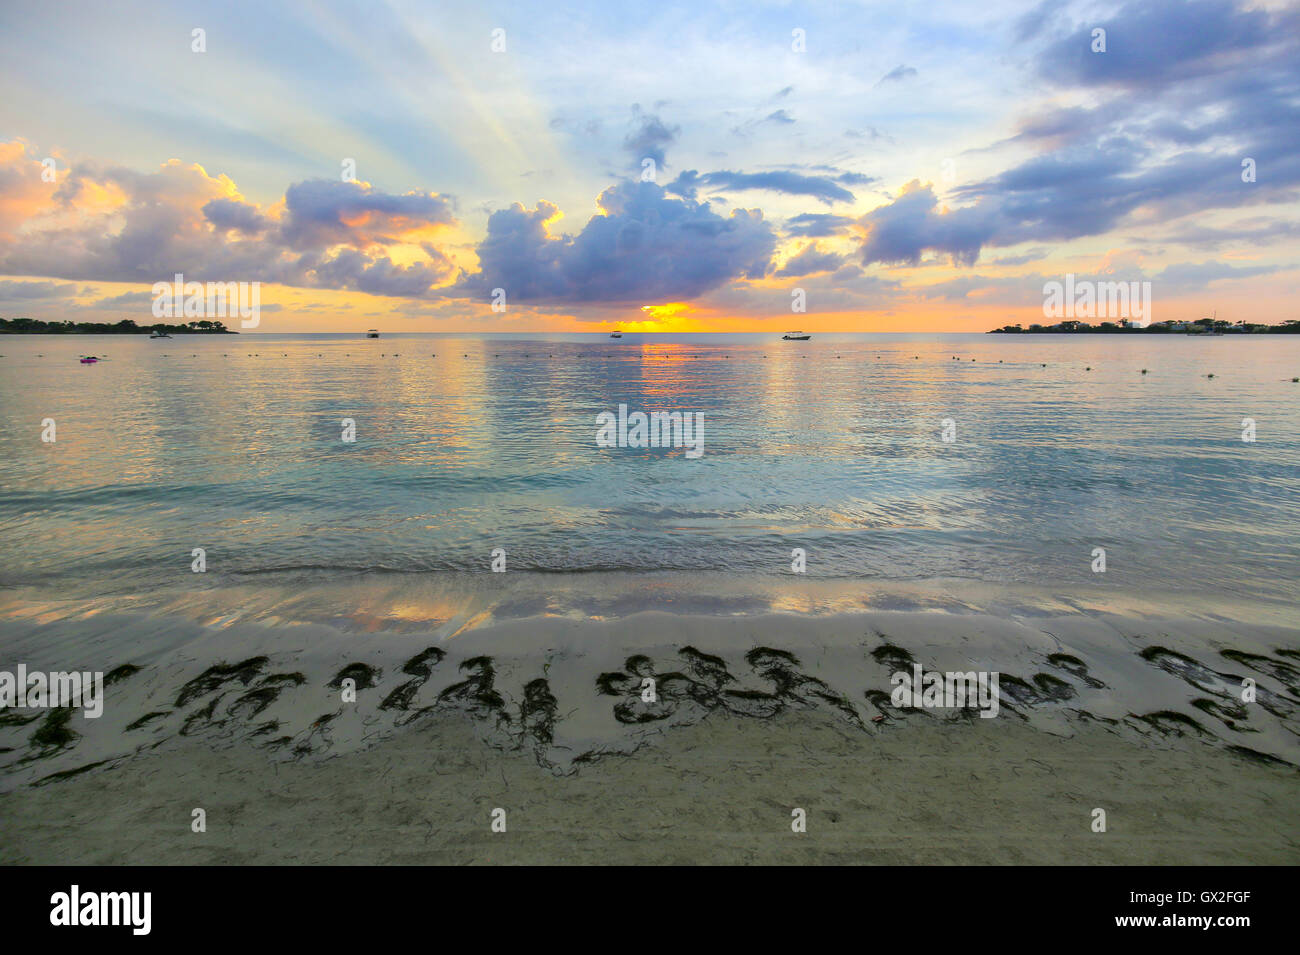 Caribe hermoso atardecer en un resort de playa. Foto de stock